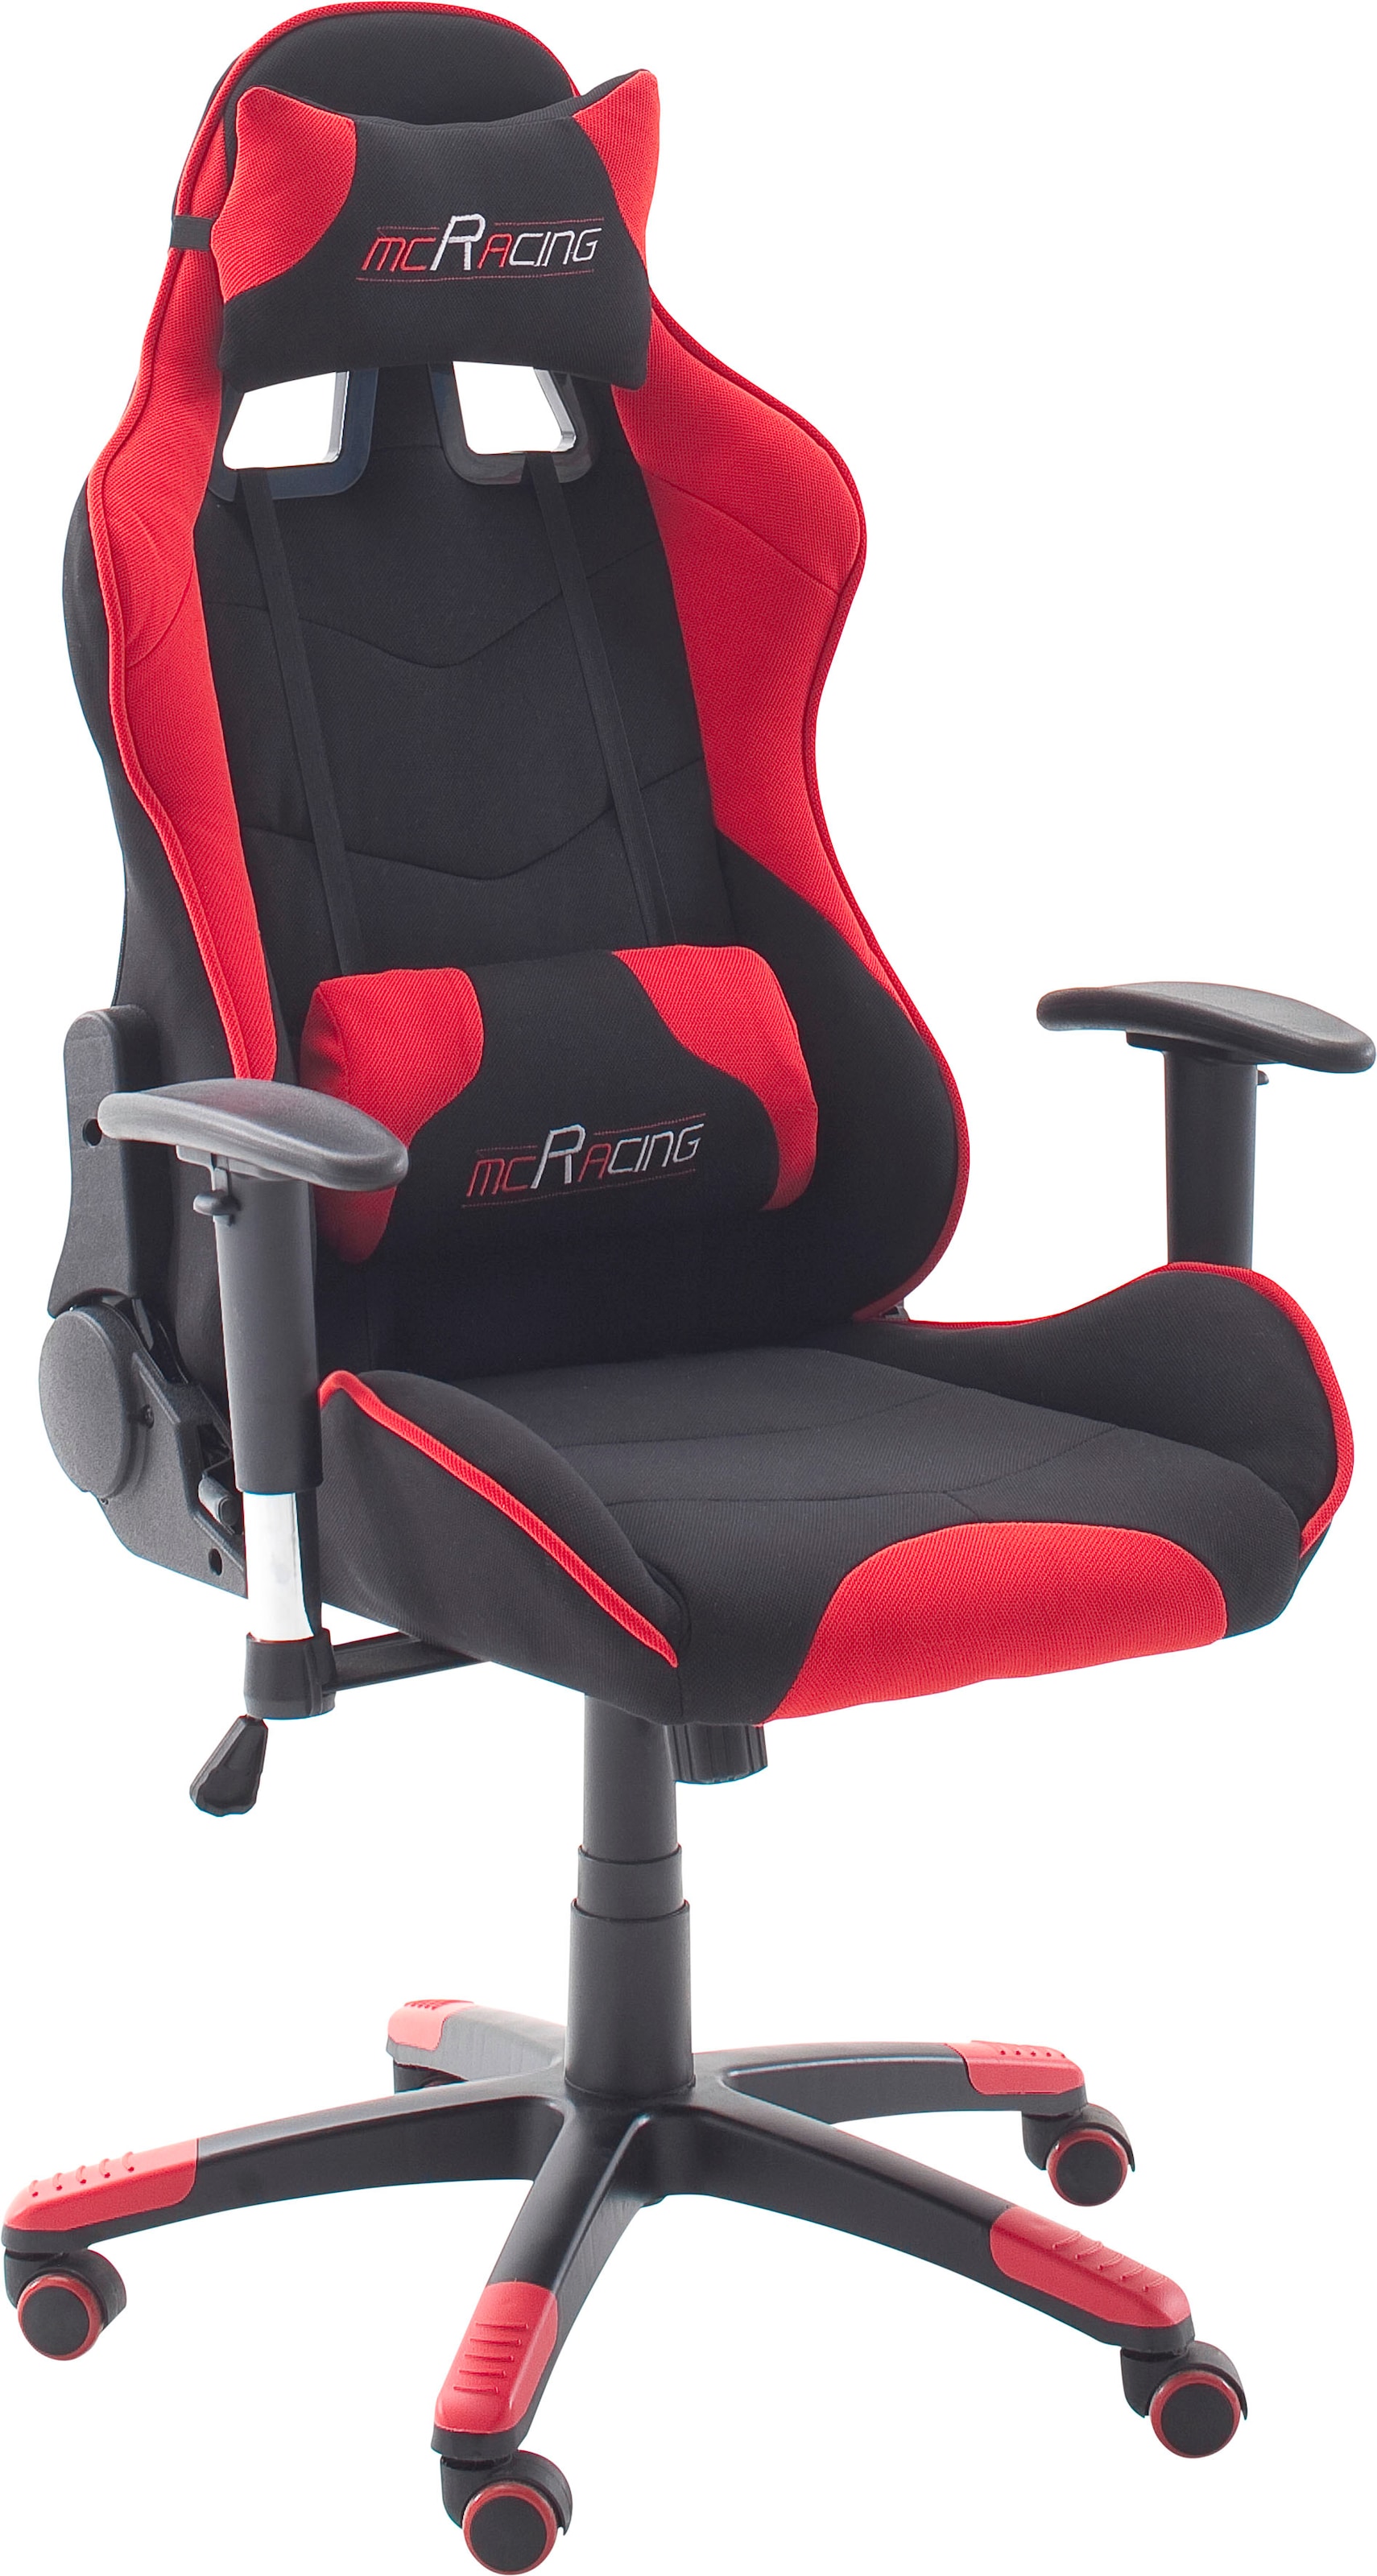 mca furniture gaming chair "mc racing gamingstuhl"